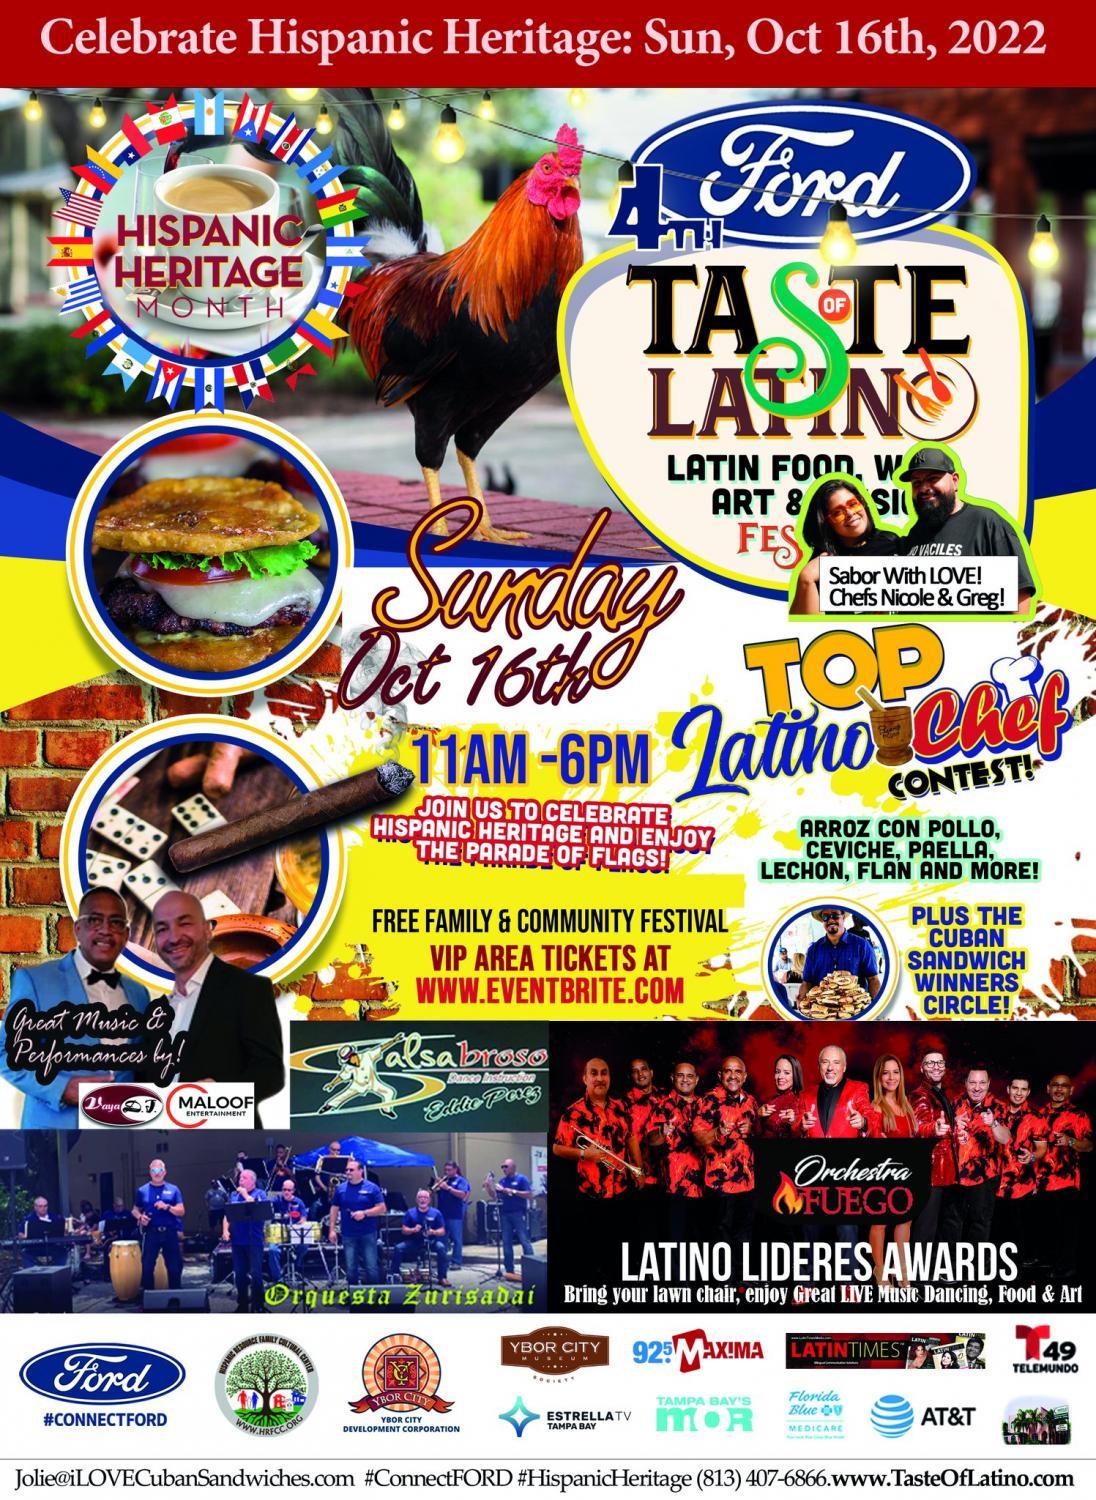 4th Annual FORD Taste of Latino Festival
Sun Oct 16, 12:00 PM - Sun Oct 16, 12:00 PM